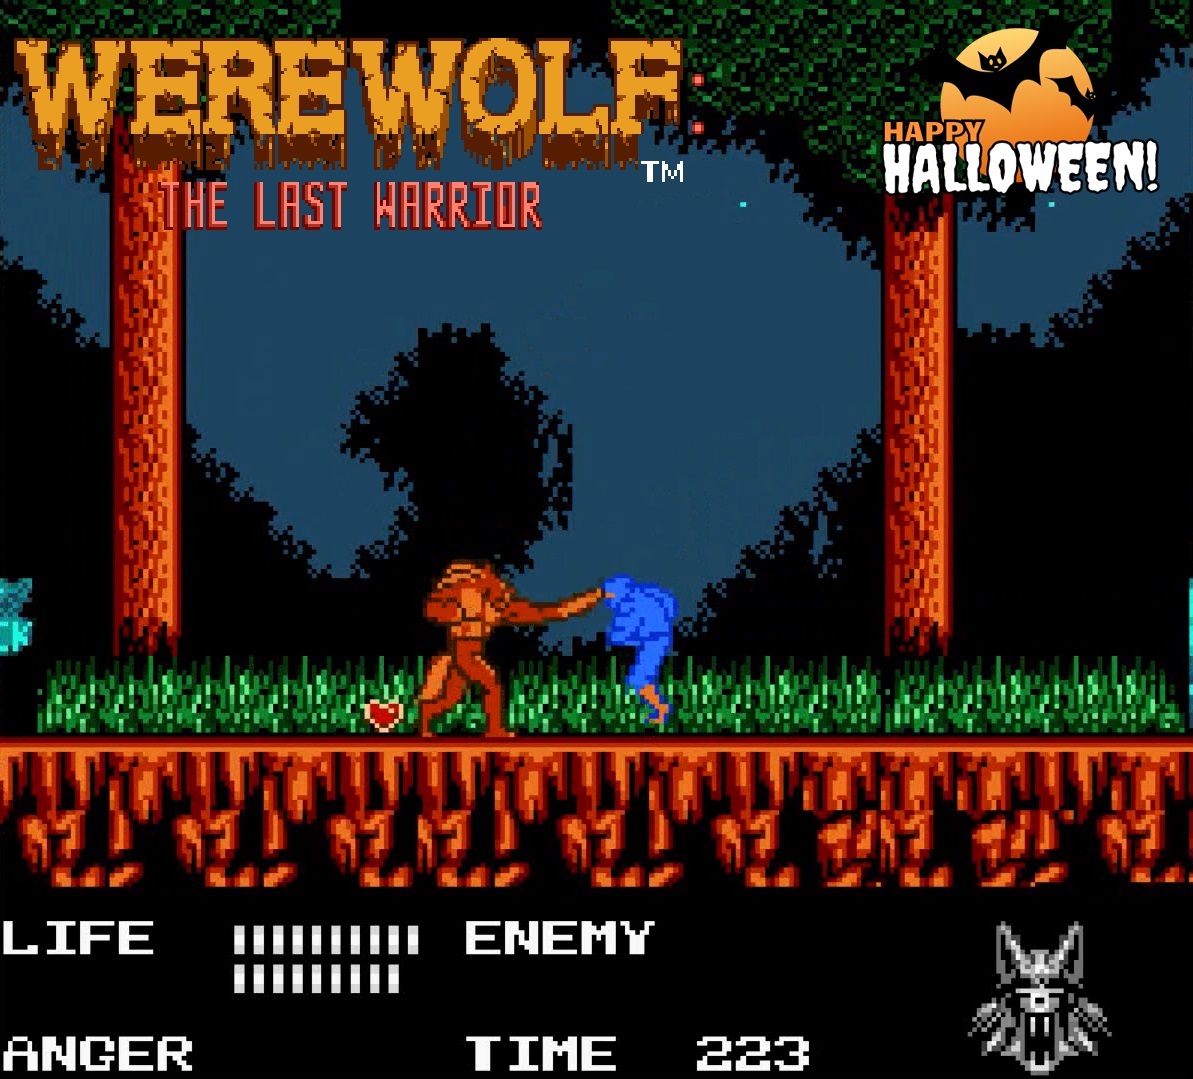 Skwlkr каспер first warrior. Werewolf the last Warrior NES. NES game Werewolf. Ff1 NES Sprite Warrior. Игра Денди Werewolf - the last Warrior (Rus).